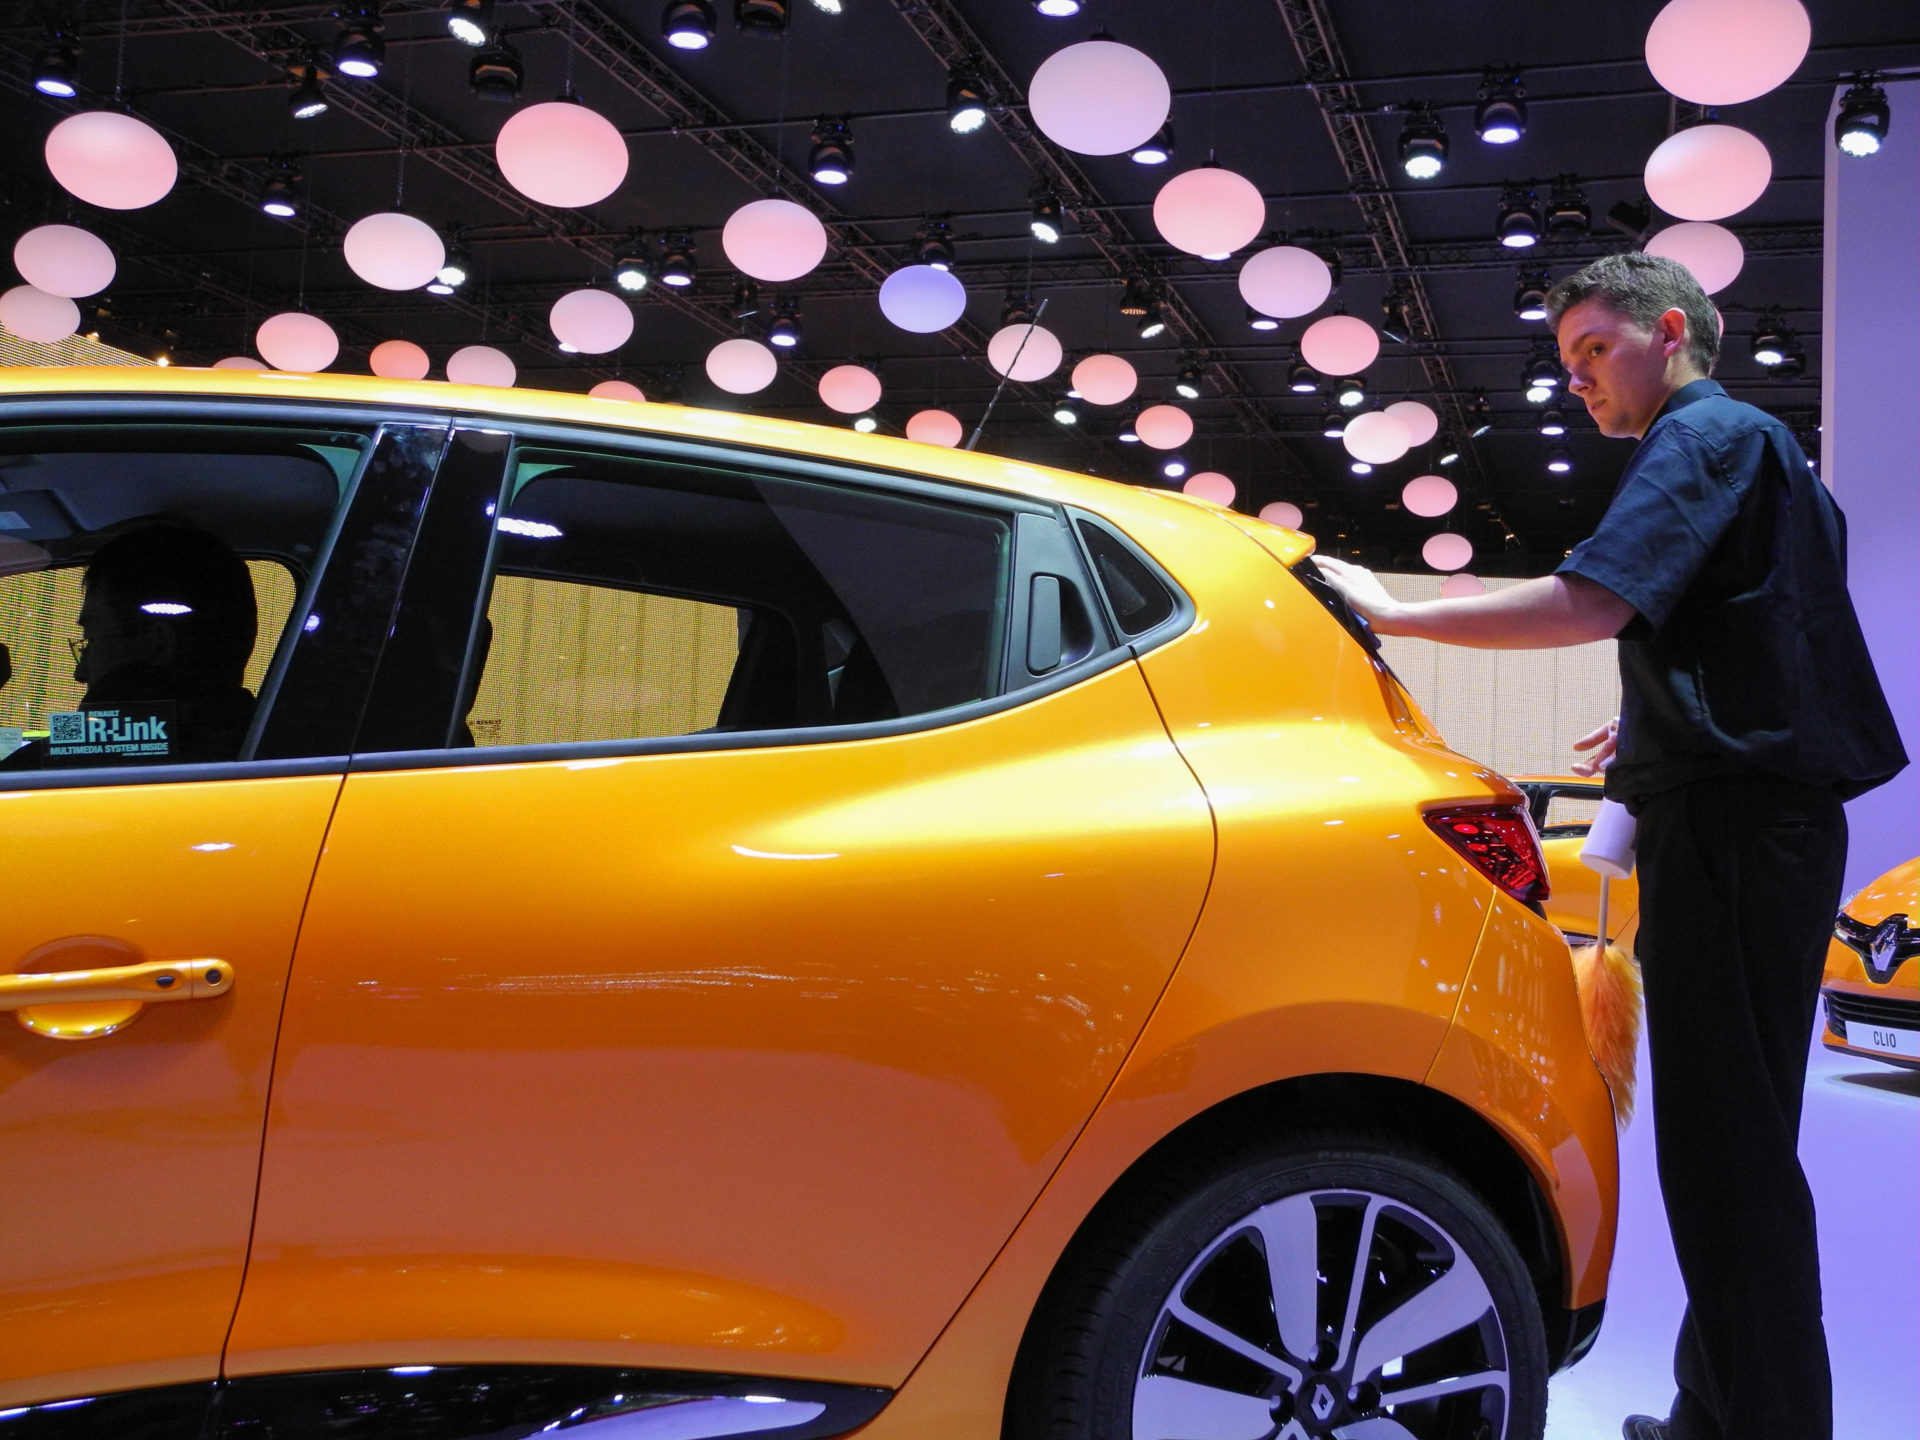 Mann poliert einen Renault Clio auf einer Automesse